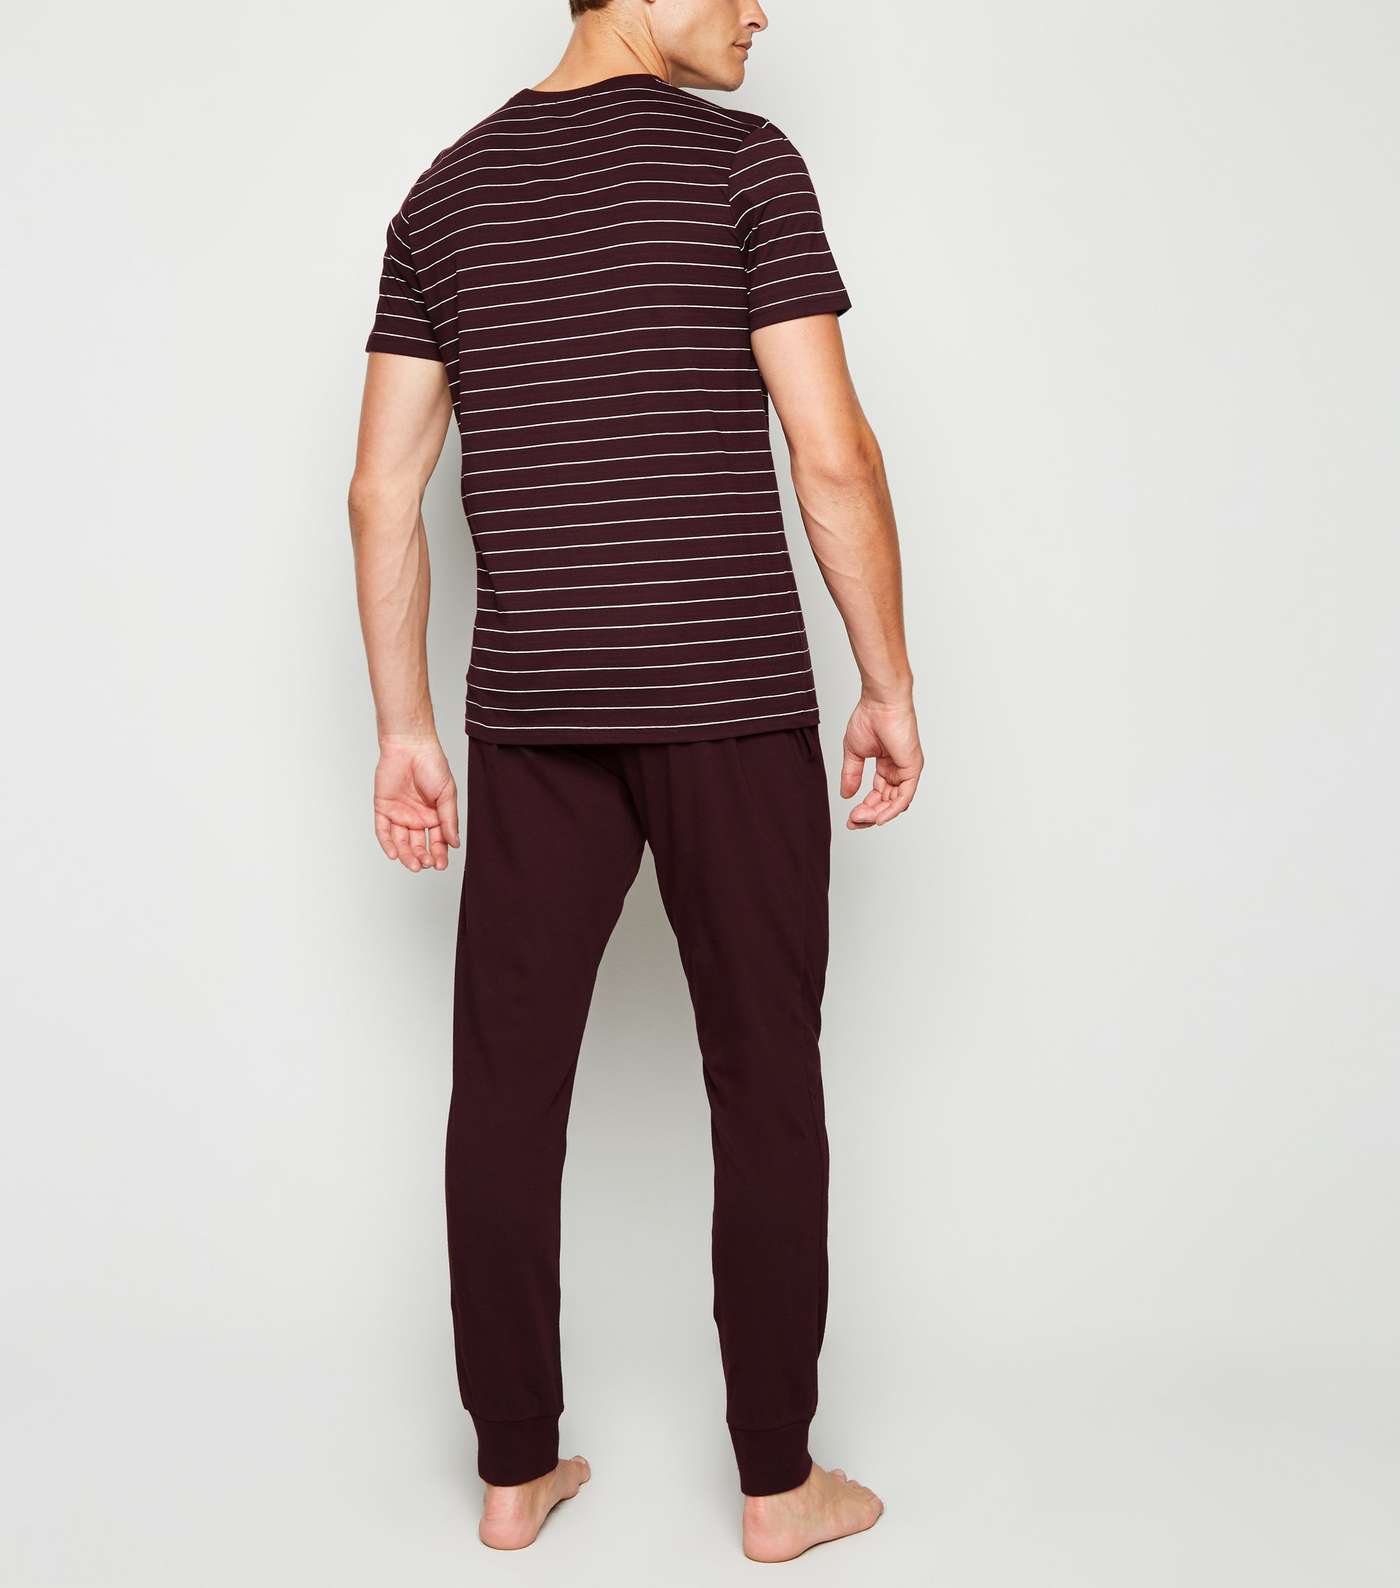 Burgundy Stripe Pyjama Set Image 2